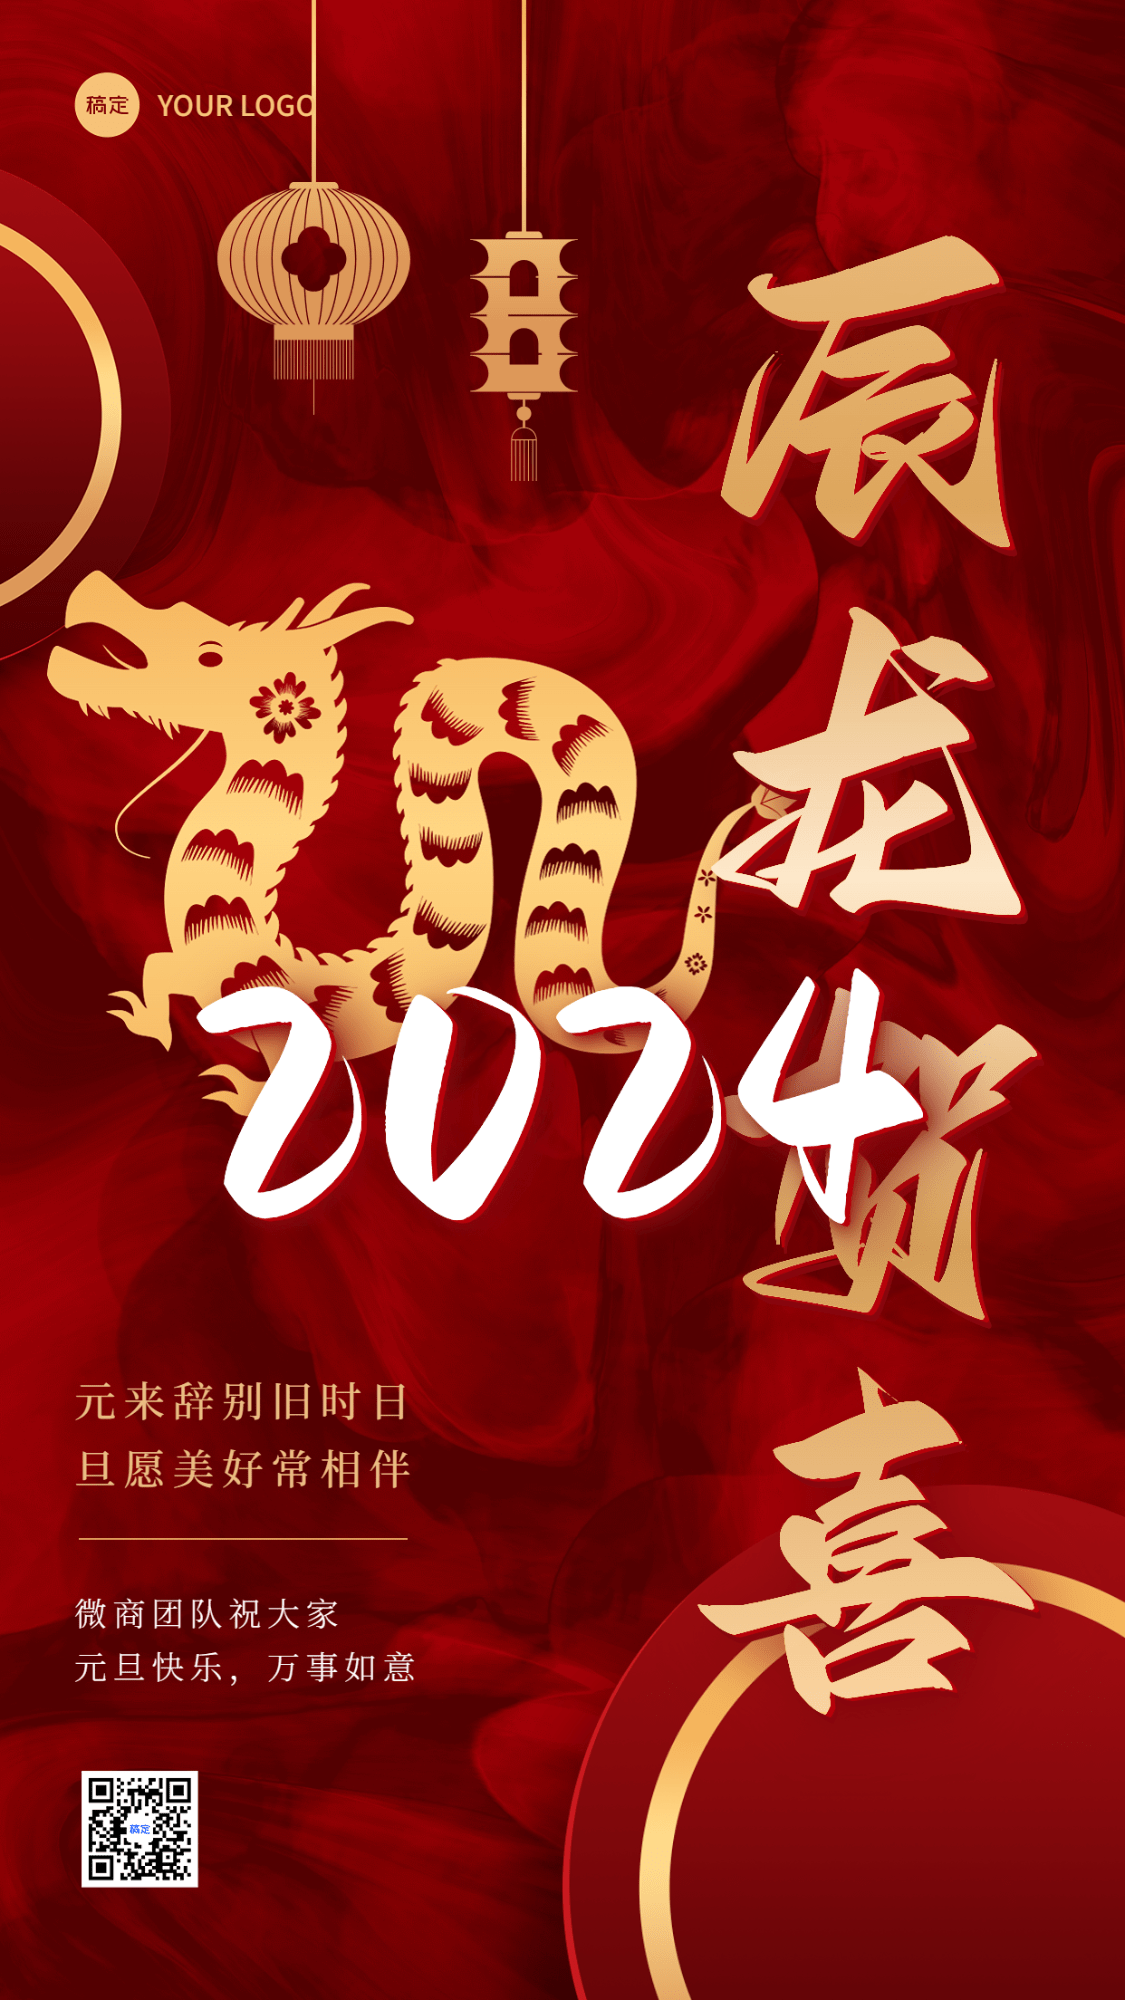 元旦新年微商节日祝福竖版海报红金剪纸中国风龙预览效果